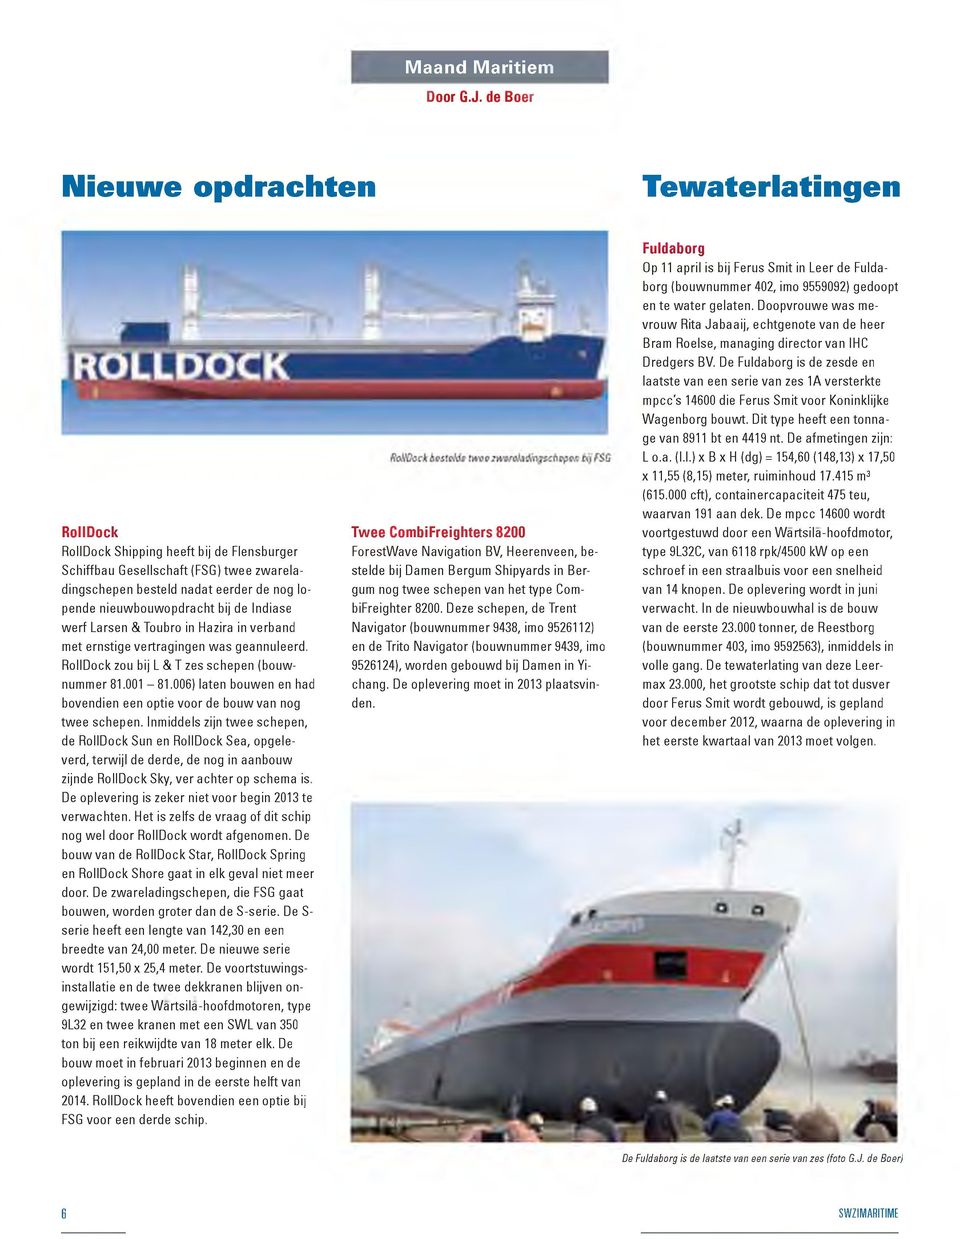 nieuwbouwopdracht bij de Indiase werf Larsen & Toubro in Hazira in verband met ernstige vertragingen was geannuleerd. RollDock zou bij L & T zes schepen (bouw- nummer 81.001-81.